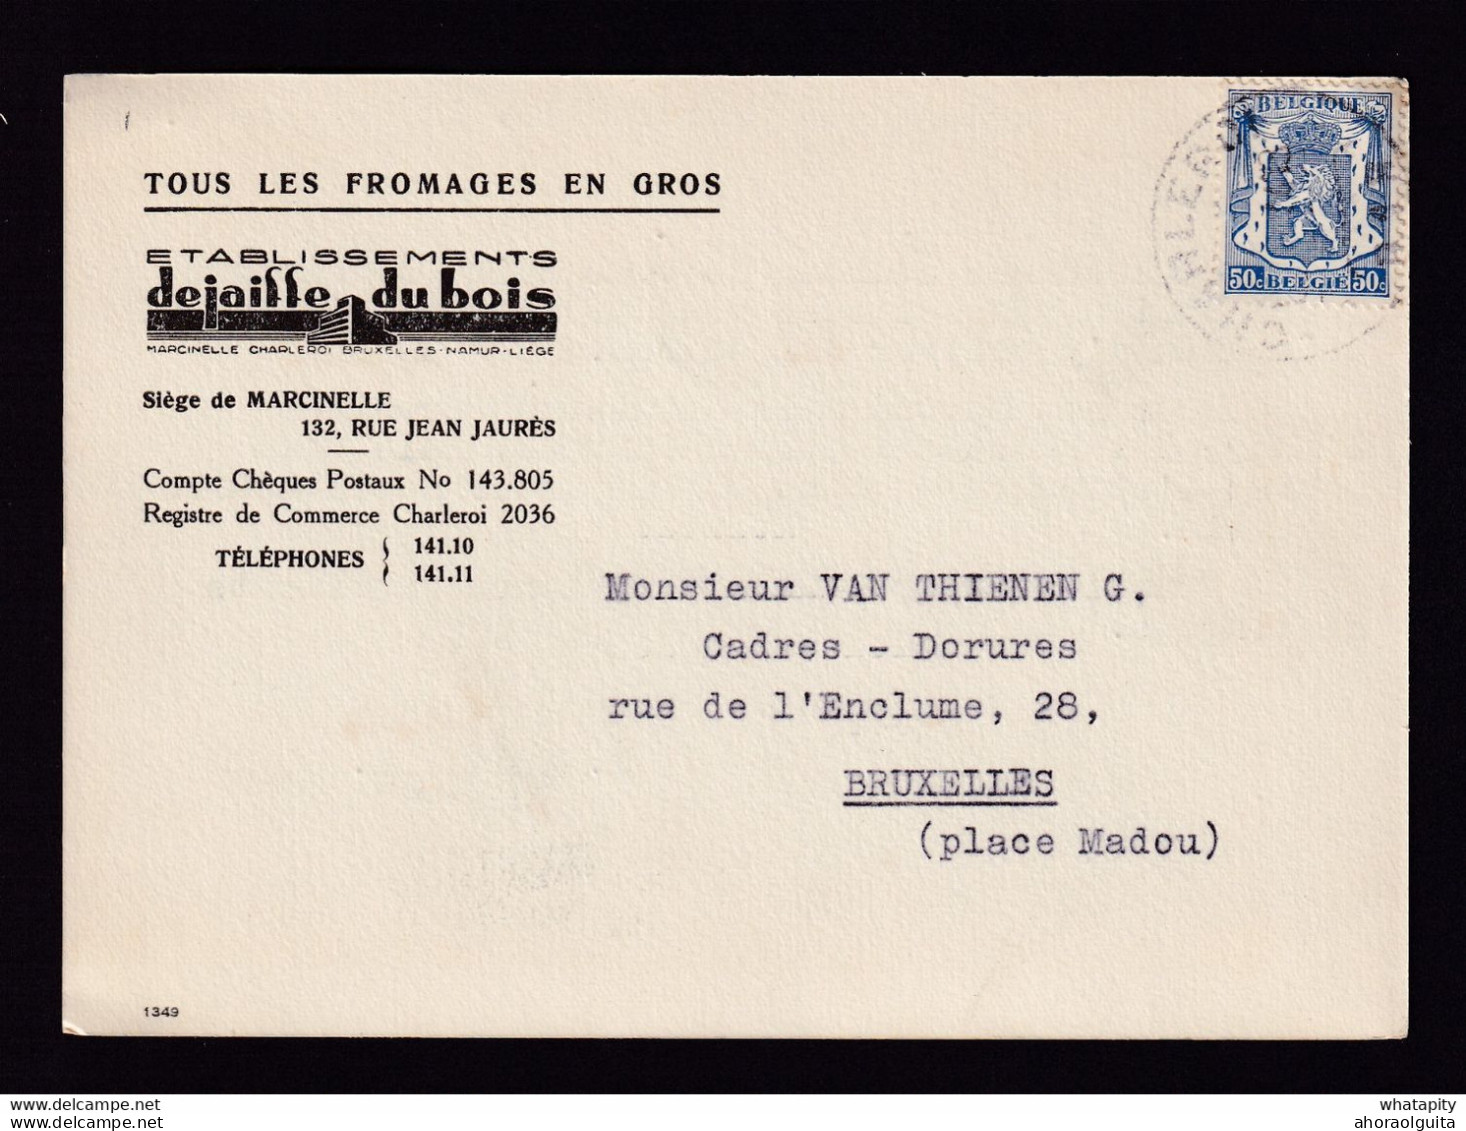 DDBB 007 - Carte Privée TP Petit Sceau CHARLEROI 1944 - Entete Fromages En Gros Dejaiffe-Dubois à MARCINELLE - 1935-1949 Small Seal Of The State